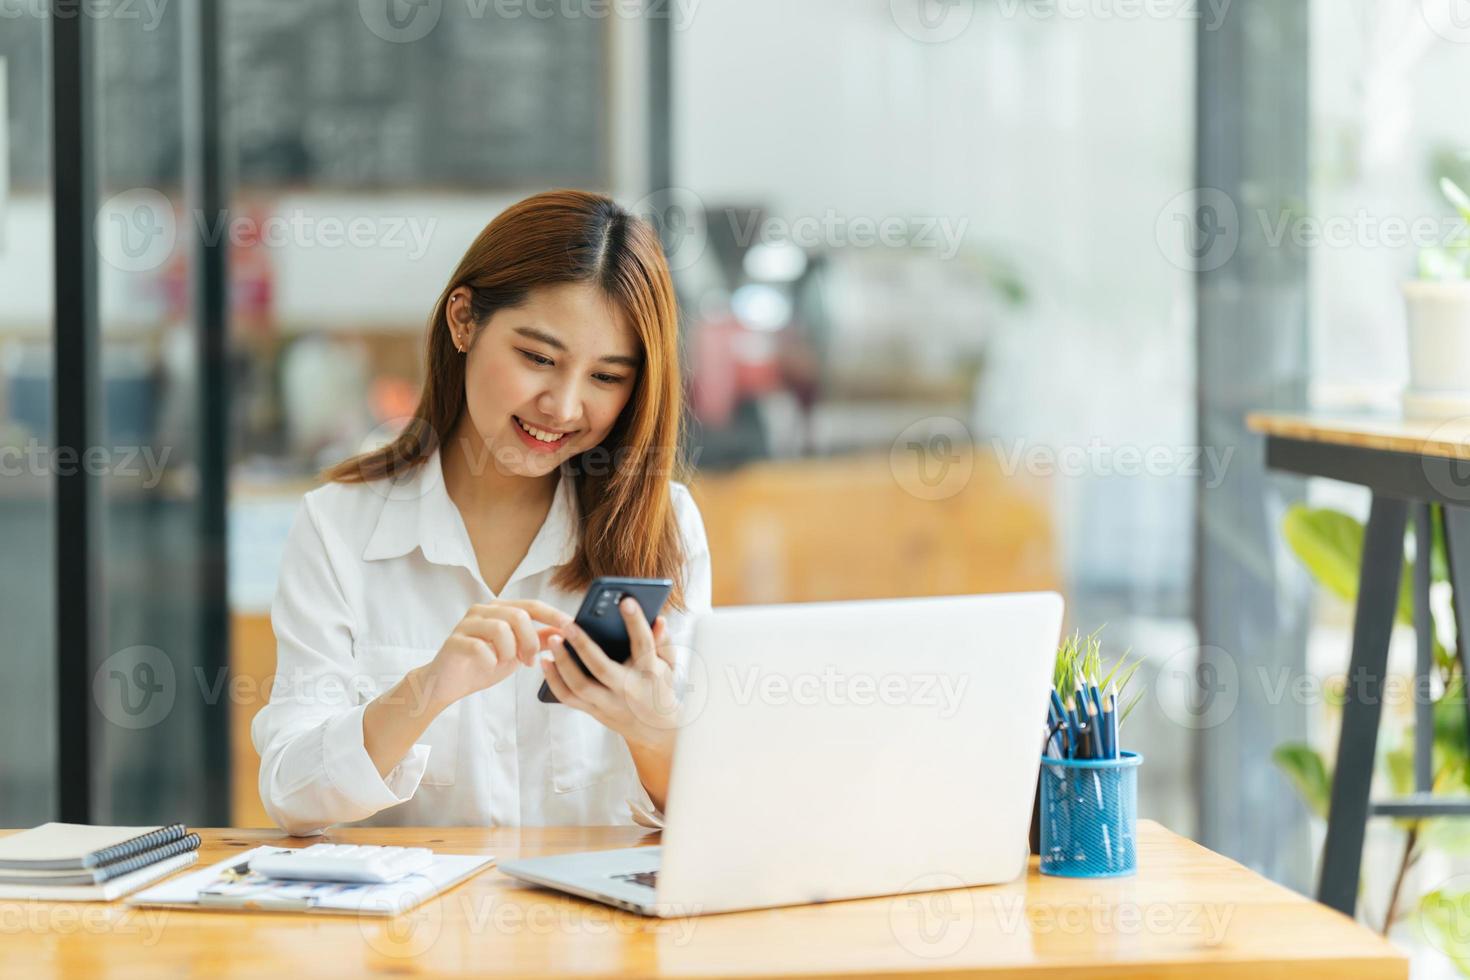 asiatische frau in lässiger kleidung ist glücklich und fröhlich, während sie mit ihrem smartphone kommuniziert und in einem café arbeitet. foto